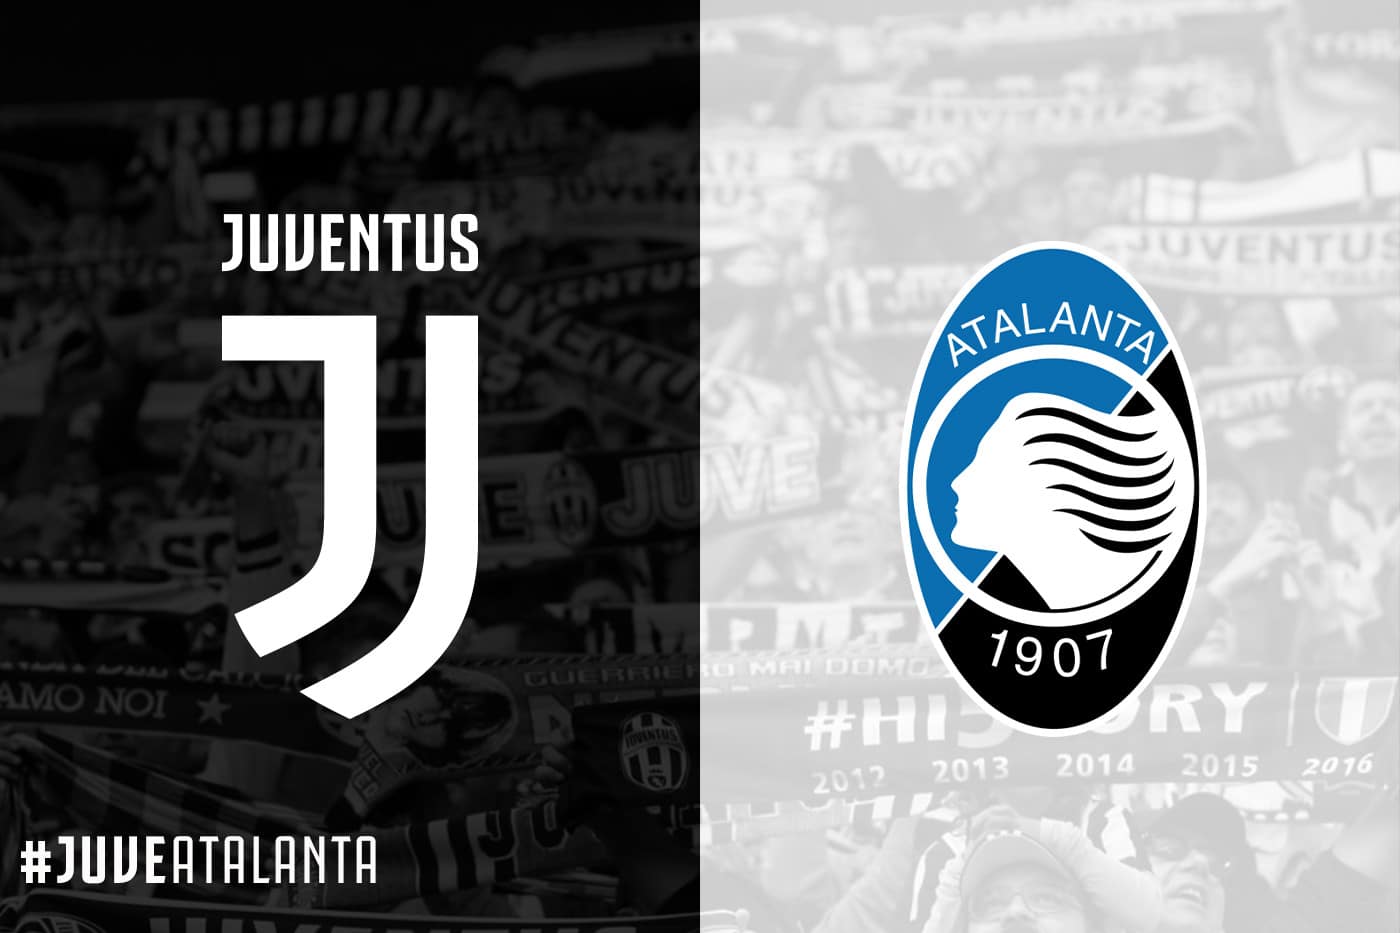 Serie A : le match Juventus vs Atalanta est reporté, découvrez les raisons !